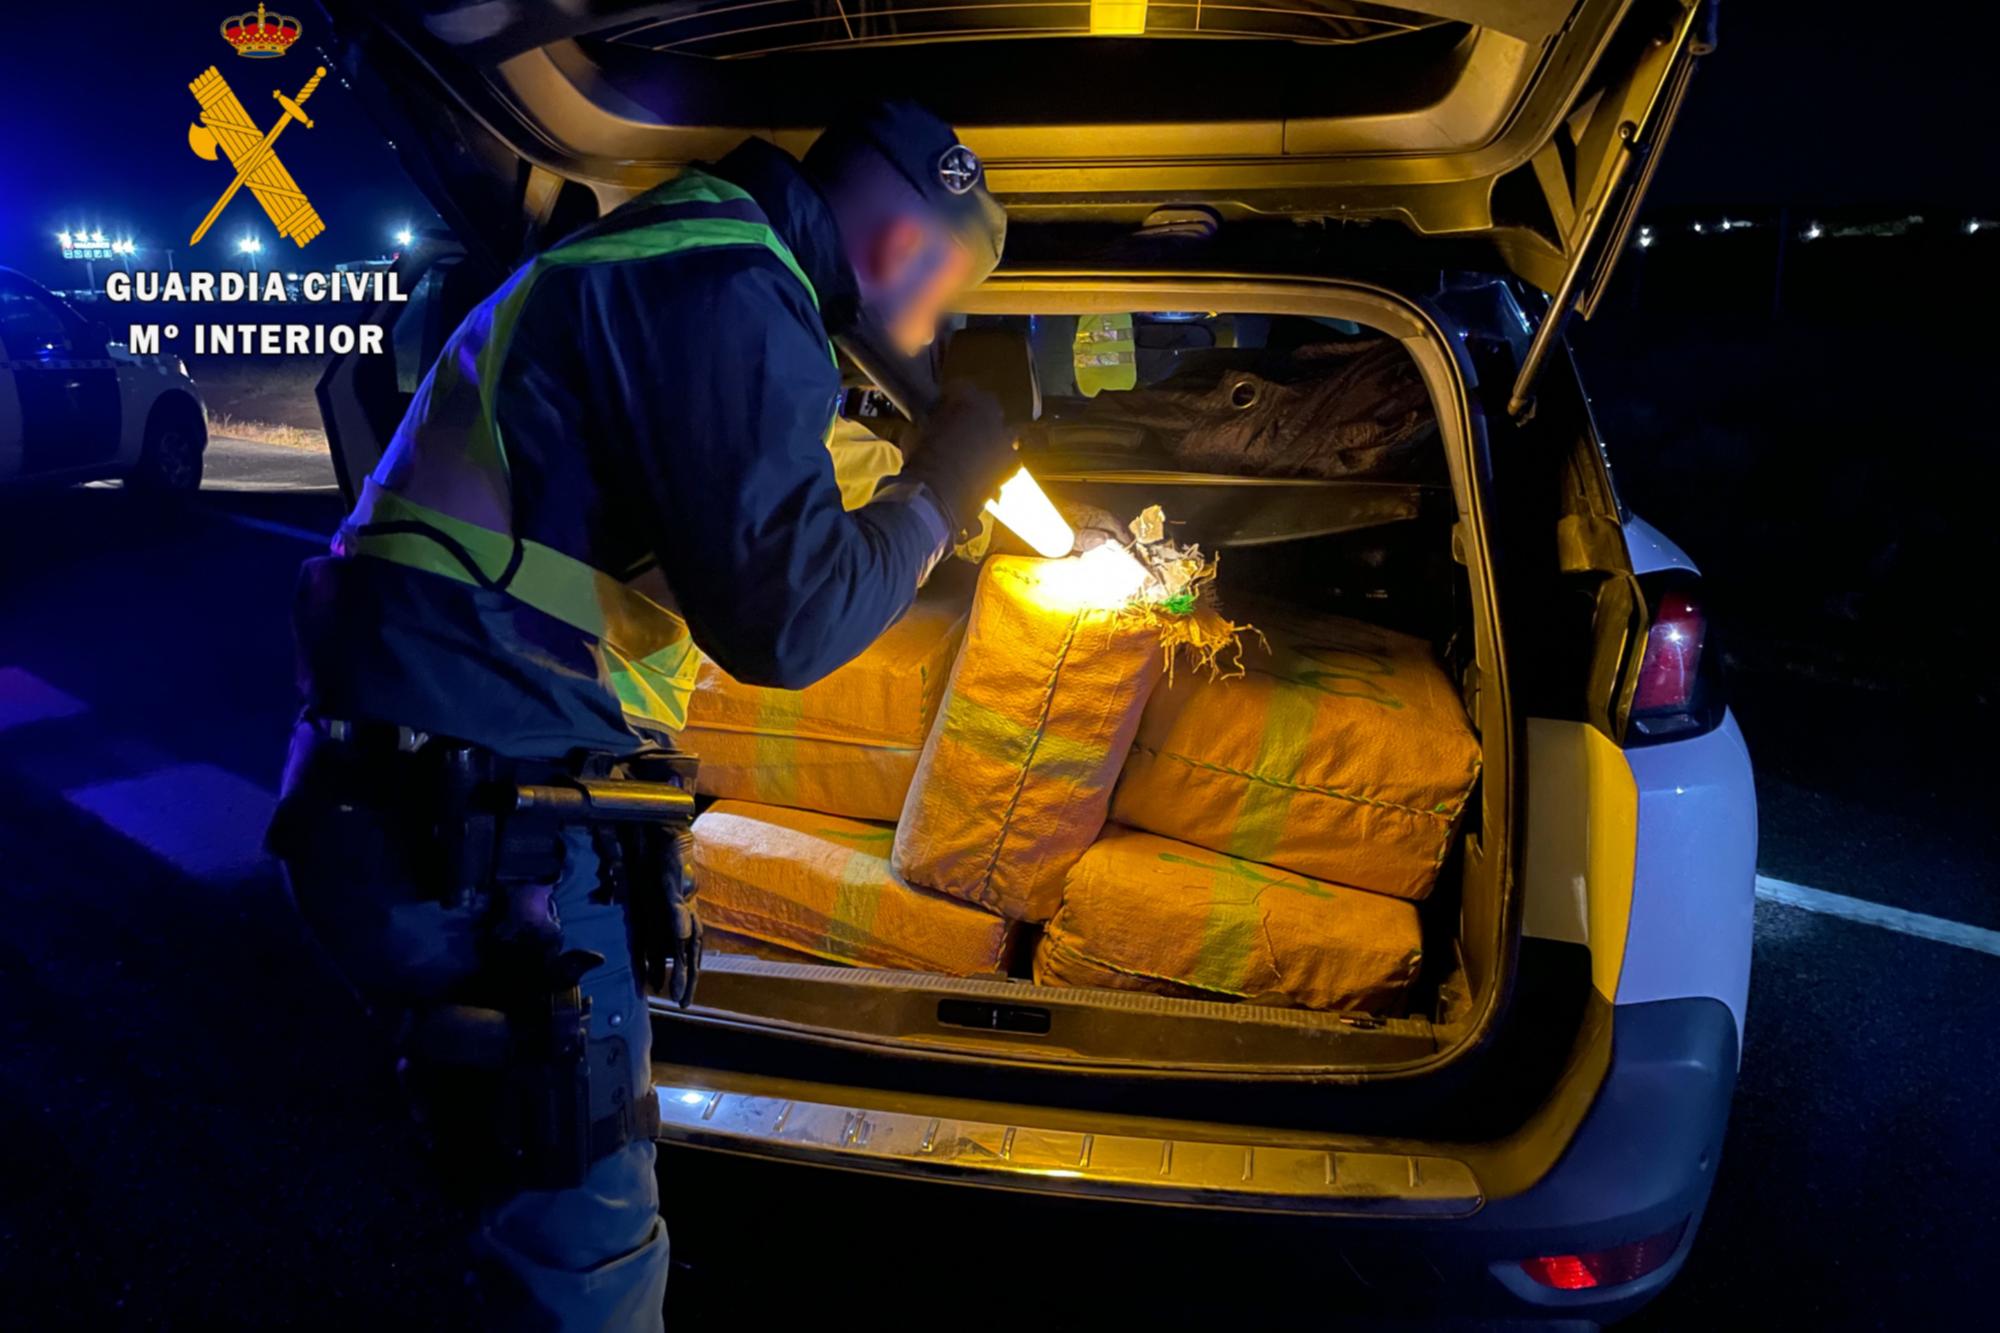 Un guardia civil con una linterna mira los fardos de hachis en el maletero de un coche